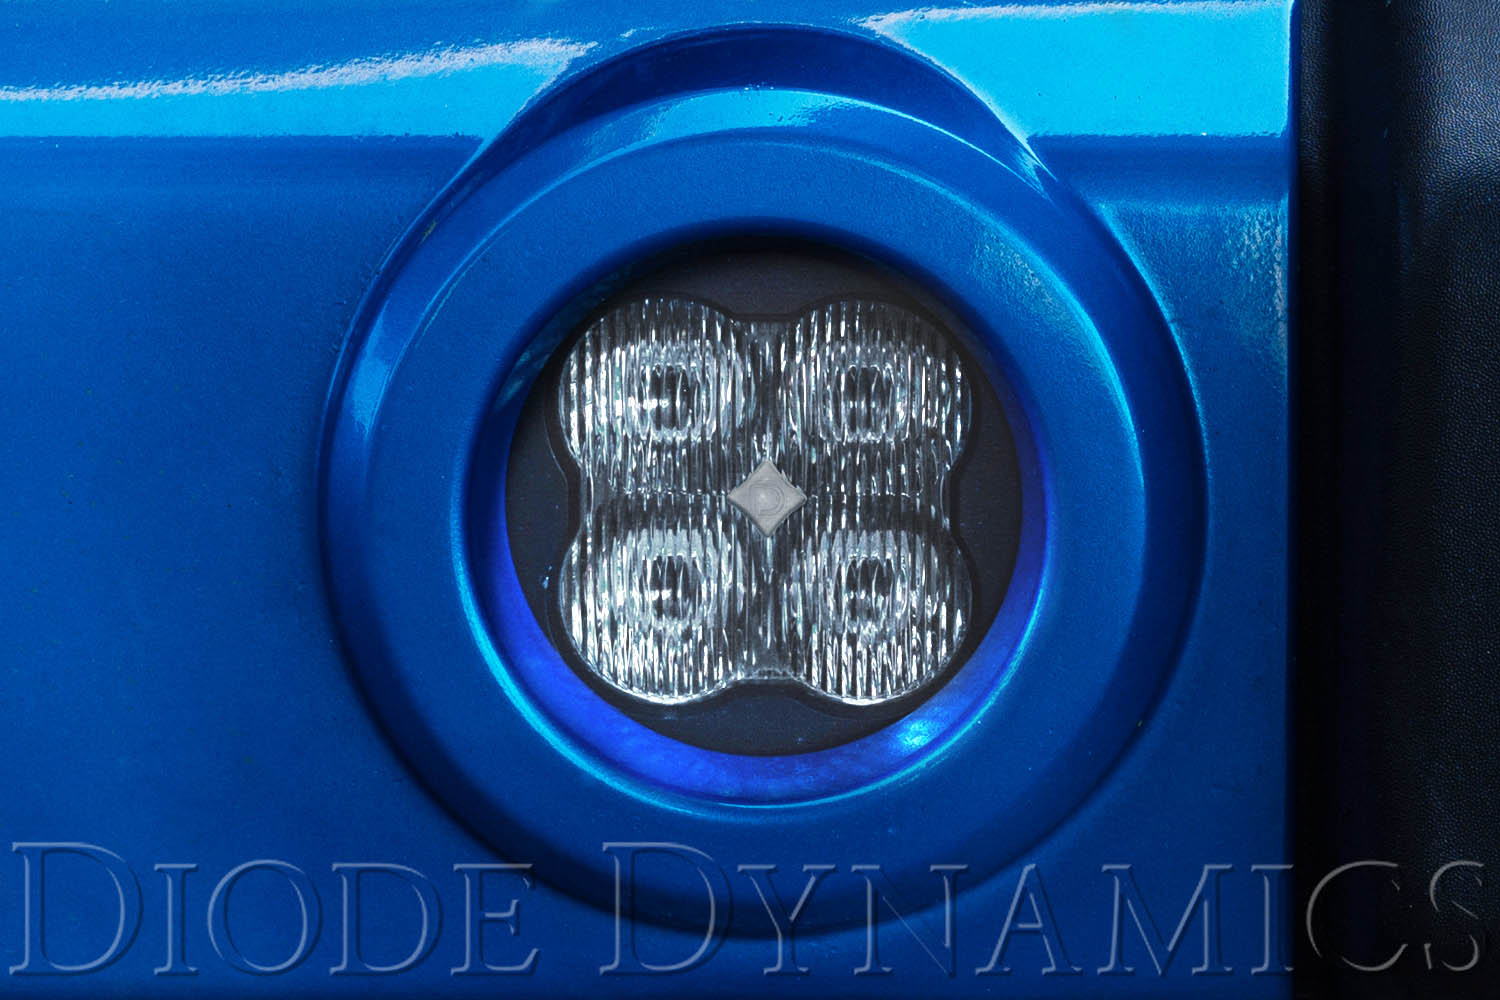 SS3 LED Fog Light Kit for 2011-2013 Jeep Grand Cherokee White SAE/DOT Driving Sport Diode Dynamics